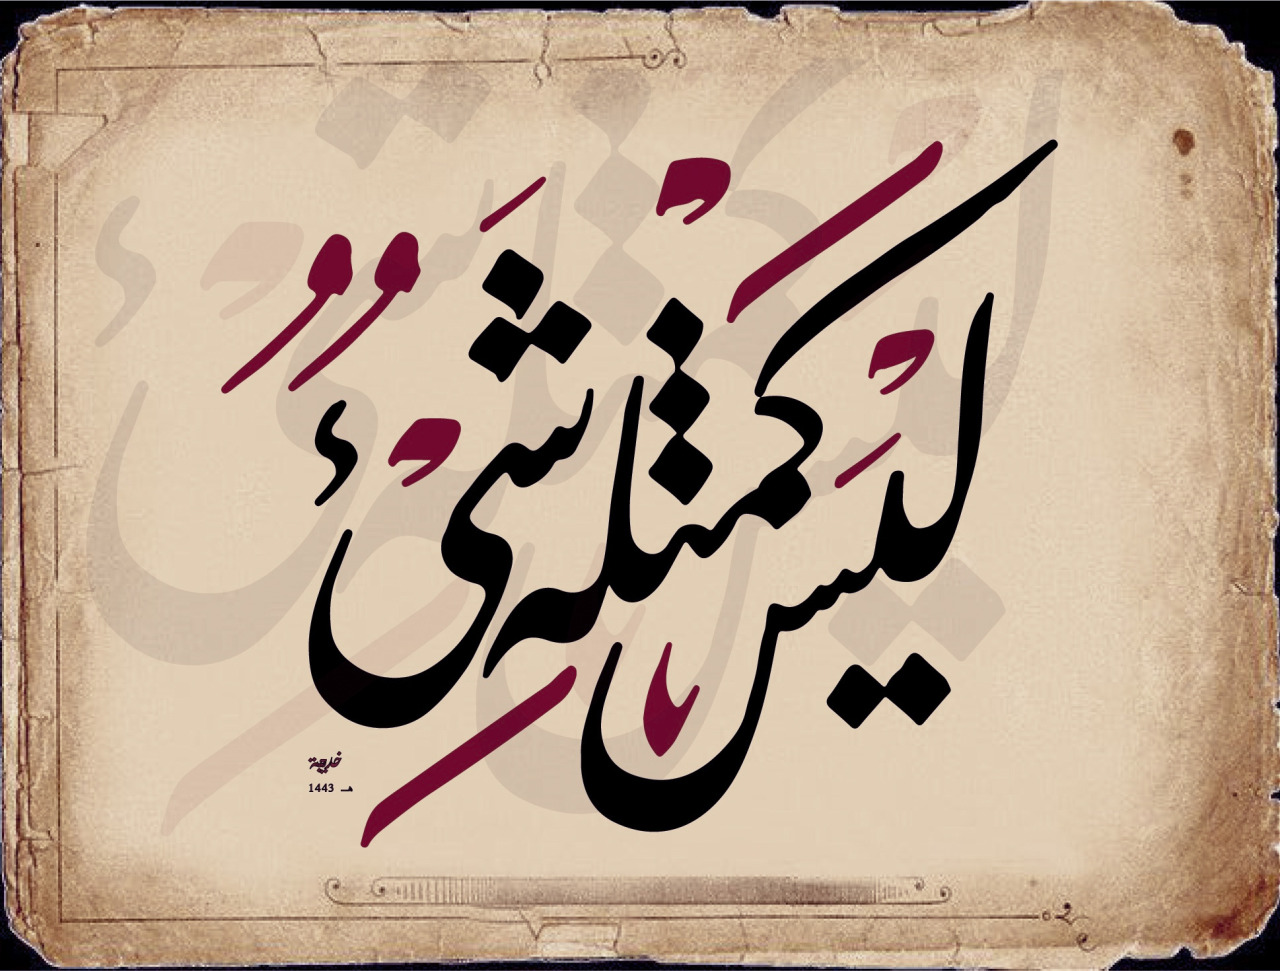 يعتبر الخط الفارسي من انواع الخط العربي الجاف